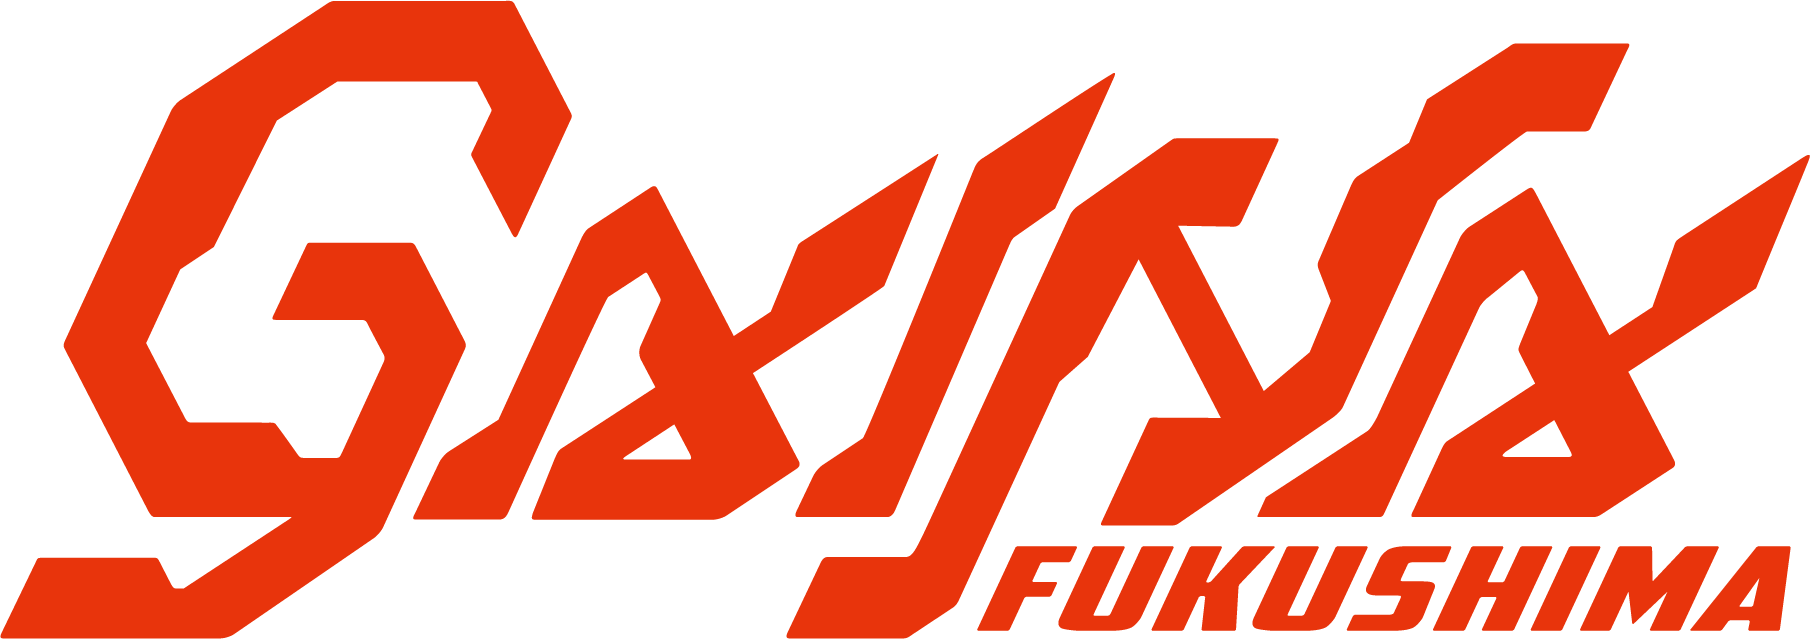 Fukushimagaina logo.png